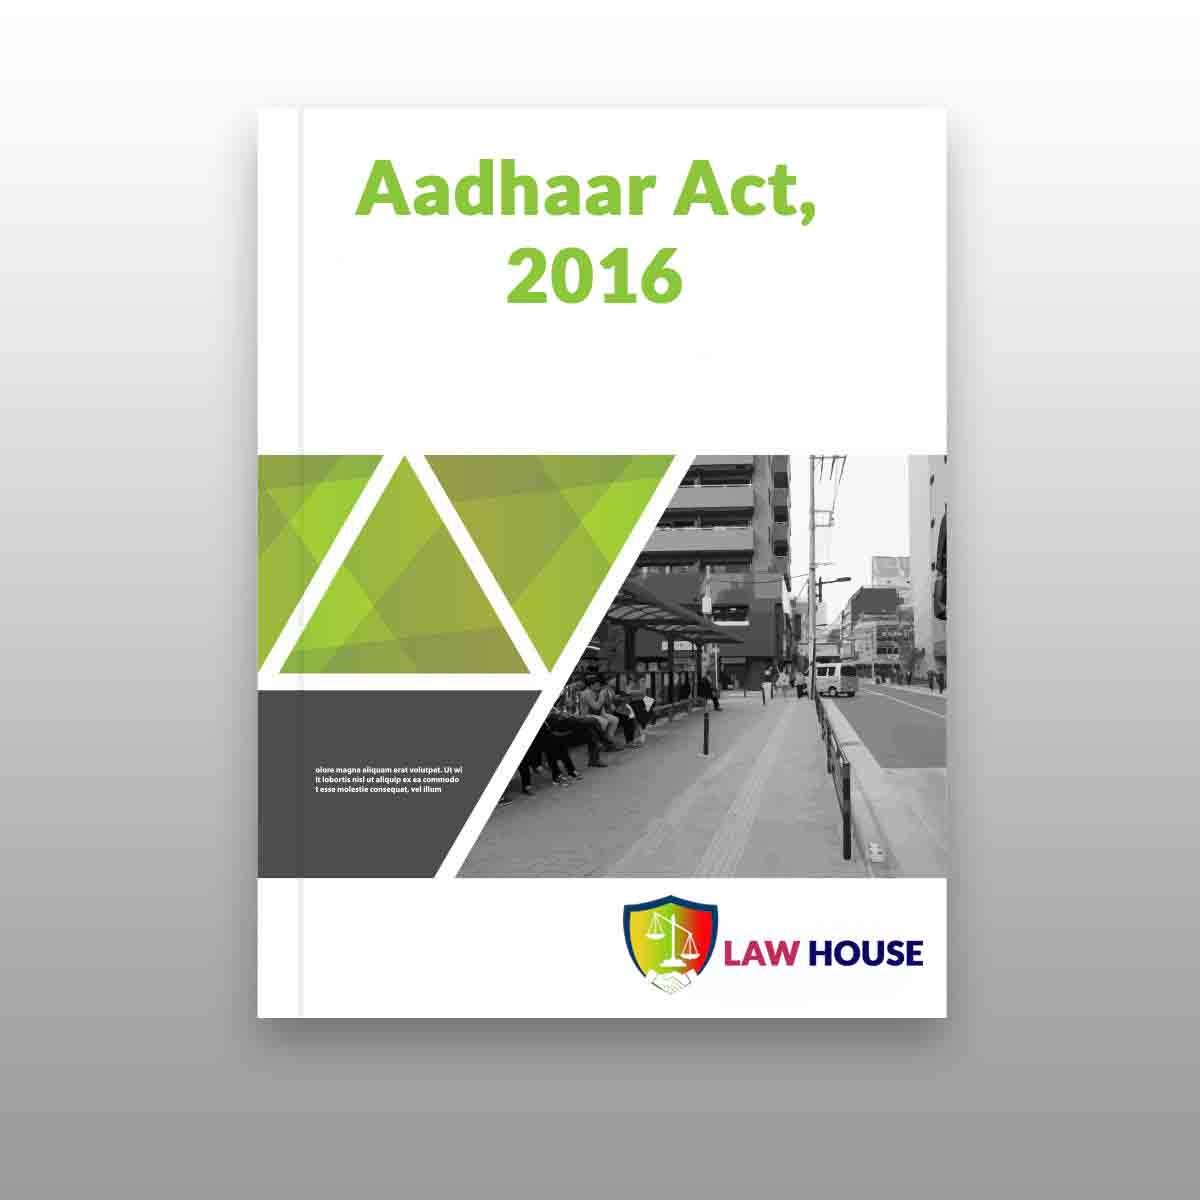 Aadhaar Act, 2016